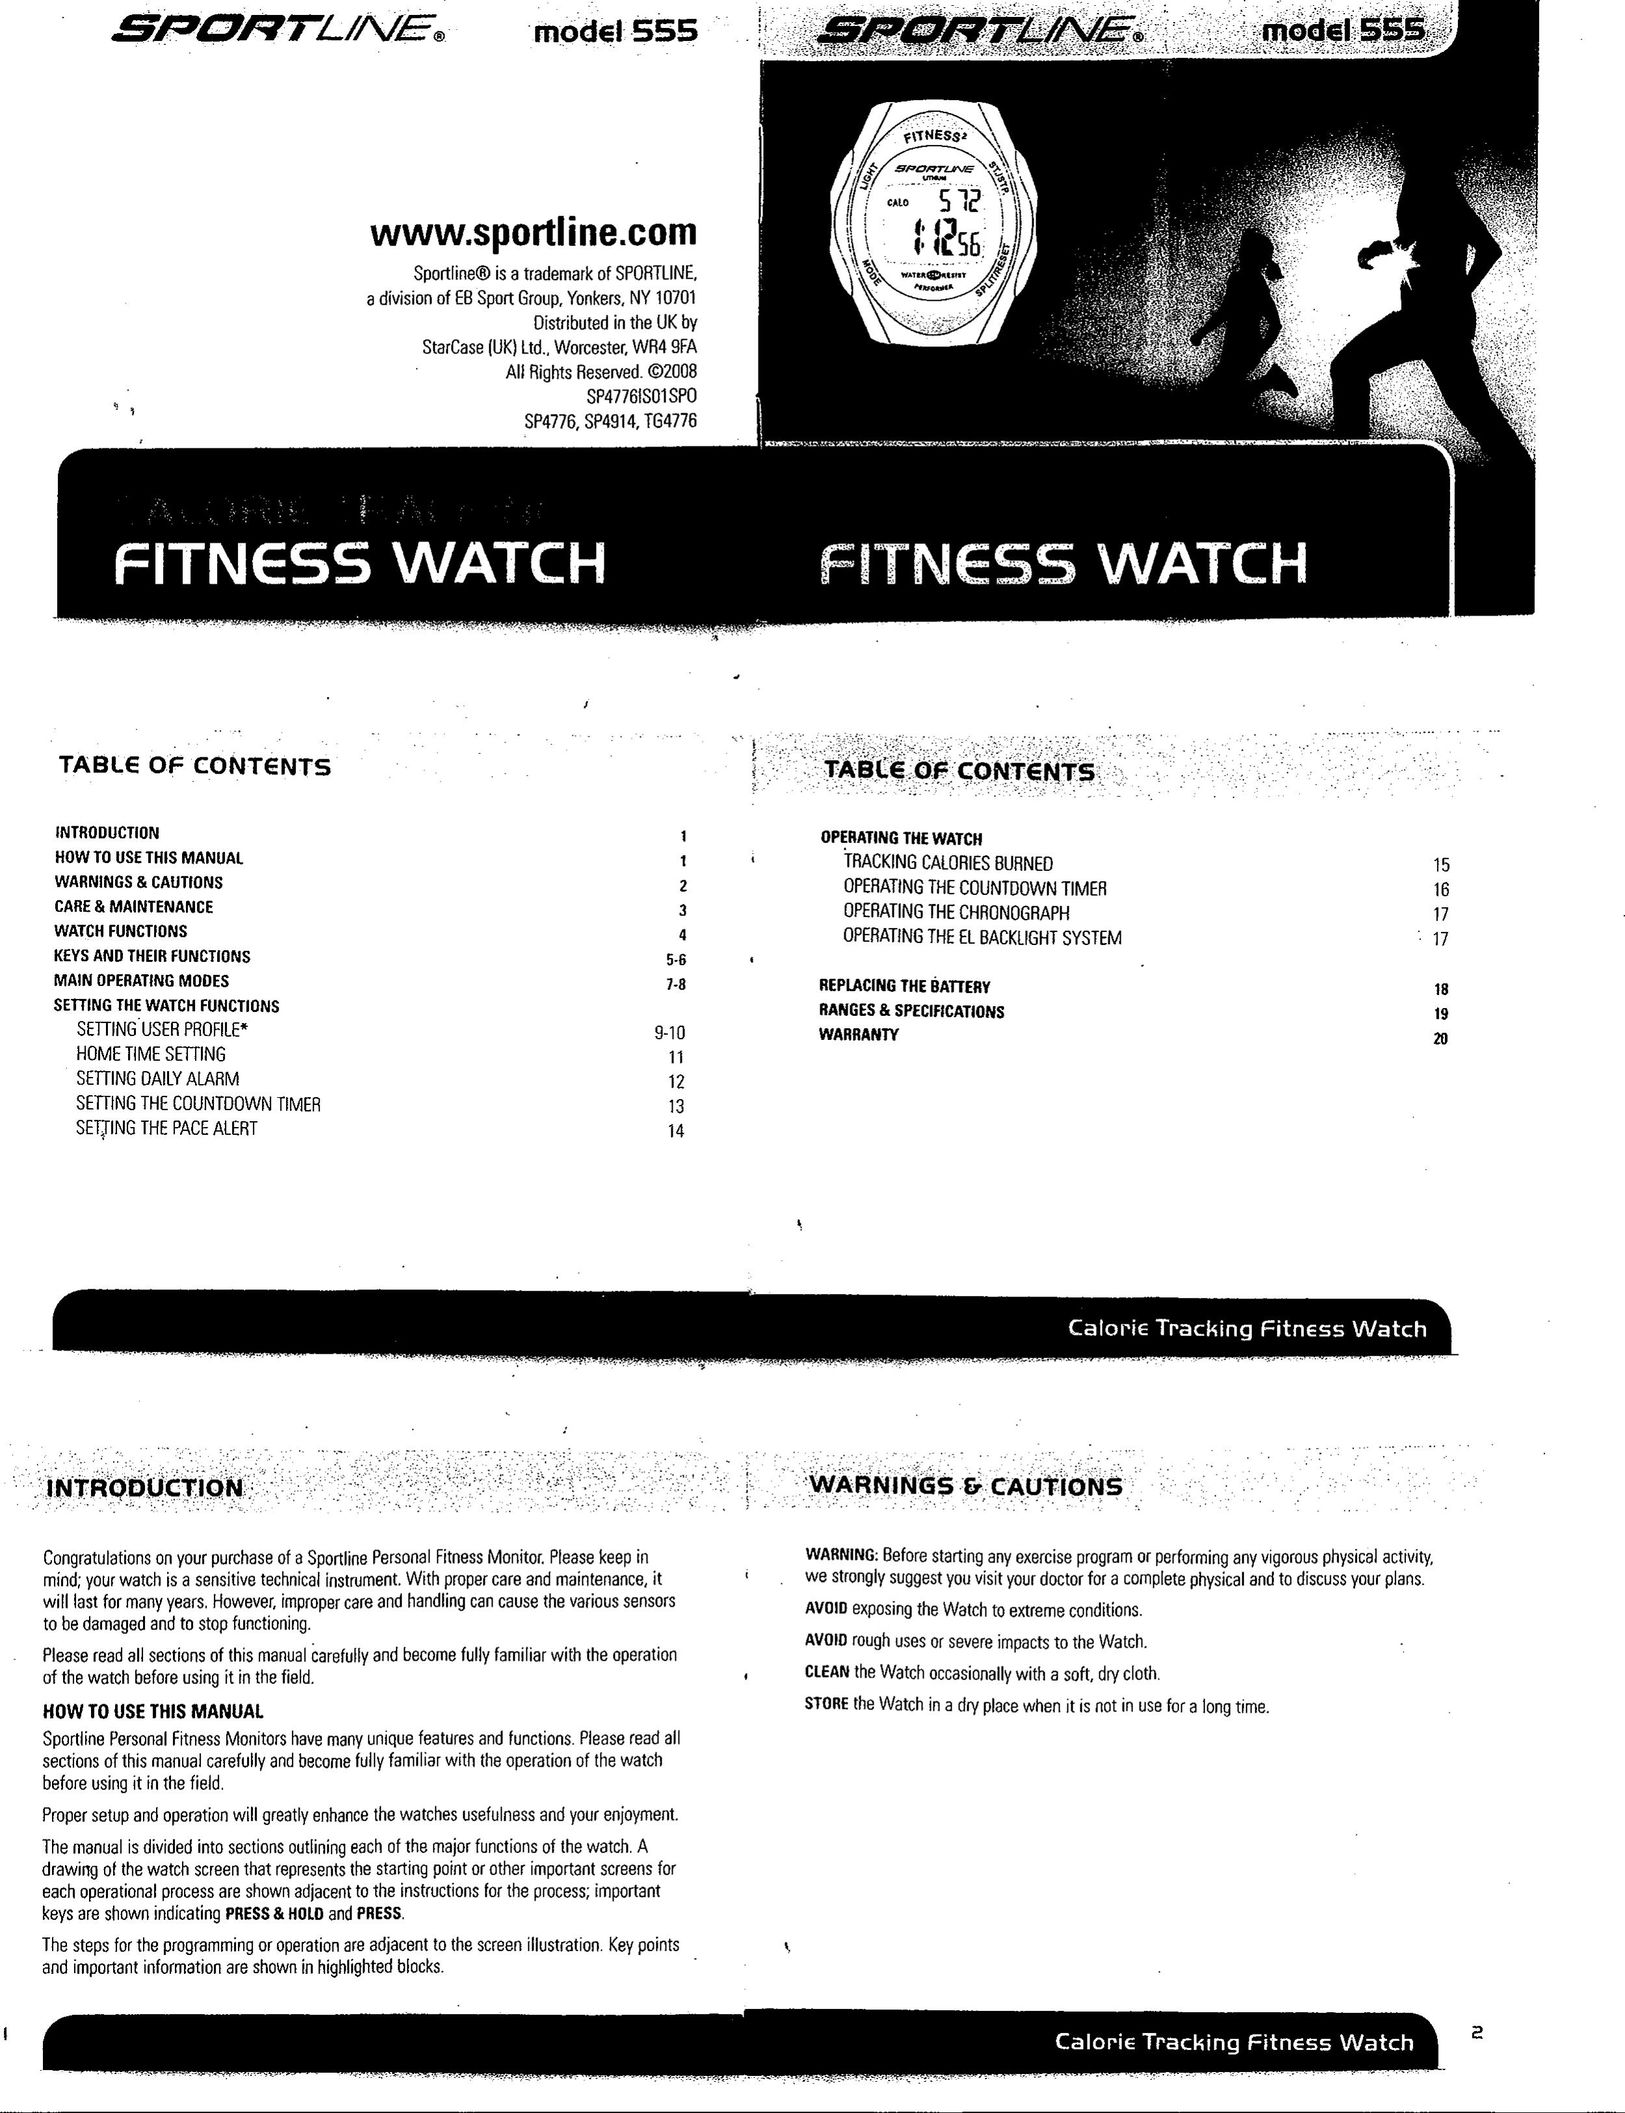 Sportline Model 555 Watch User Manual